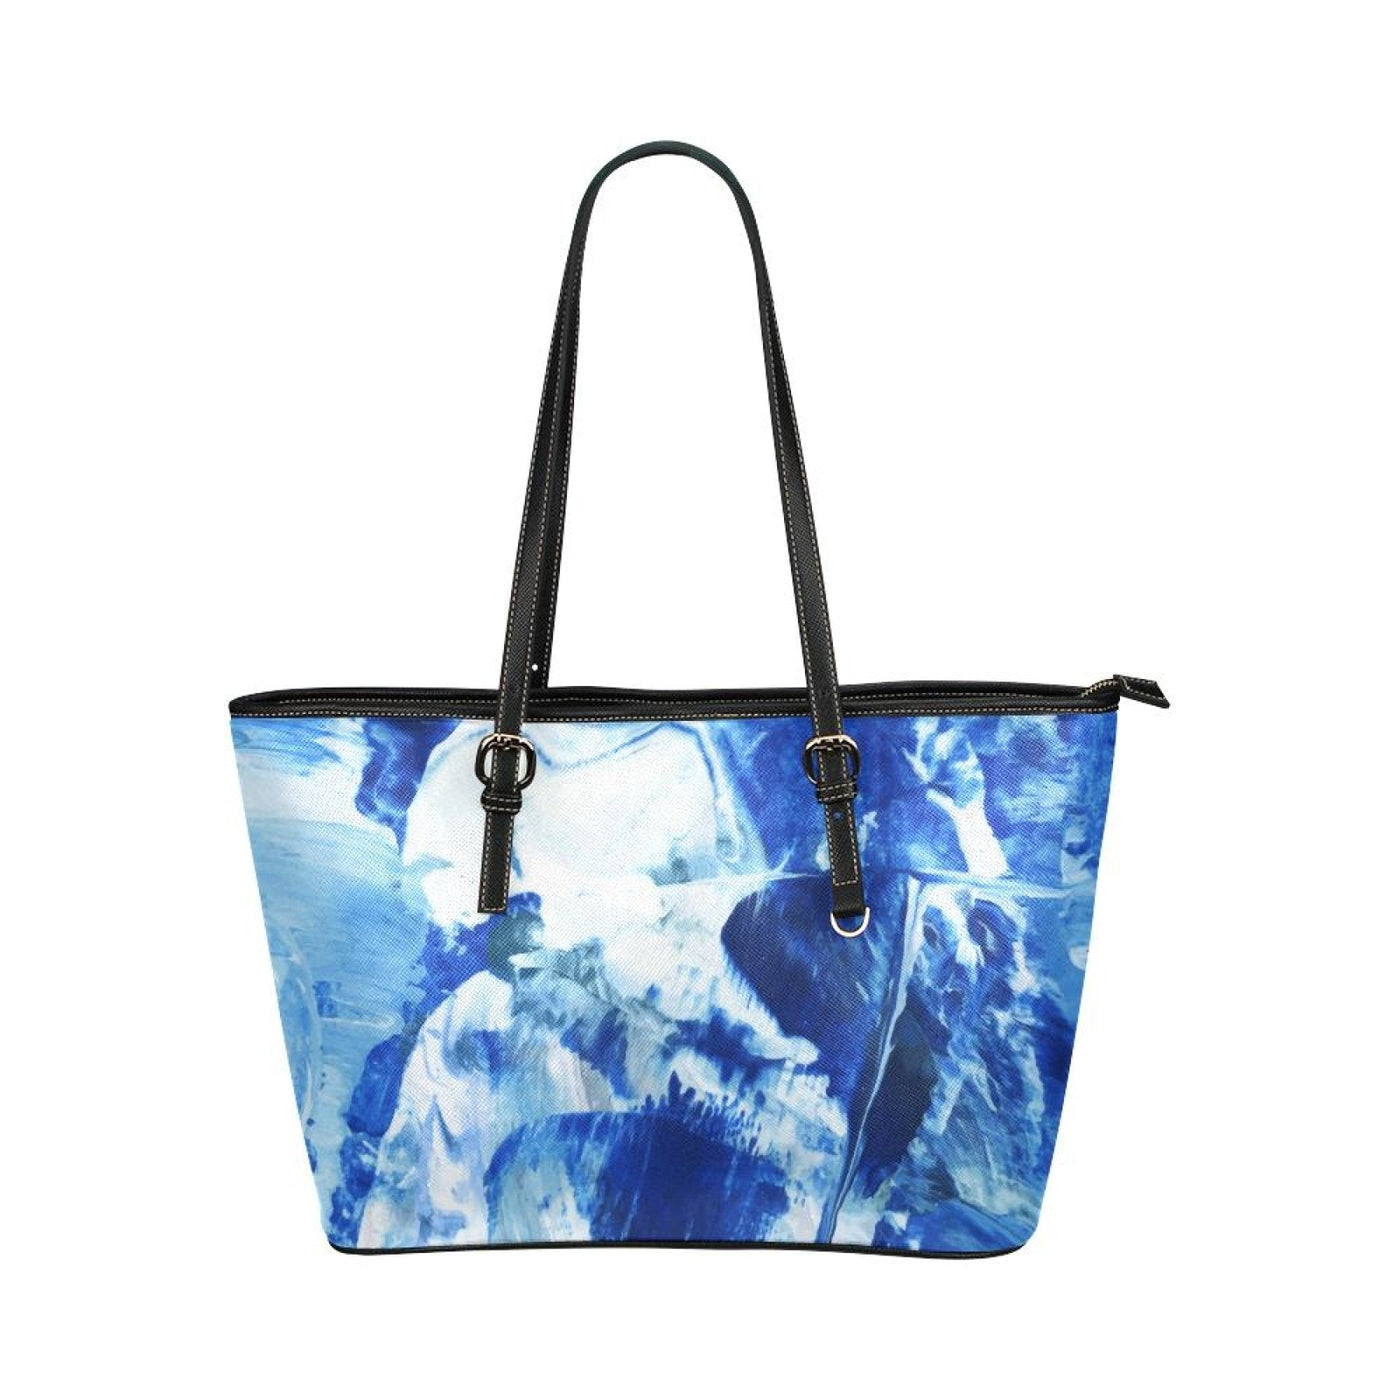 Large Leather Tote Shoulder Bag - Blue And Black Swirl Pattern Illustration -